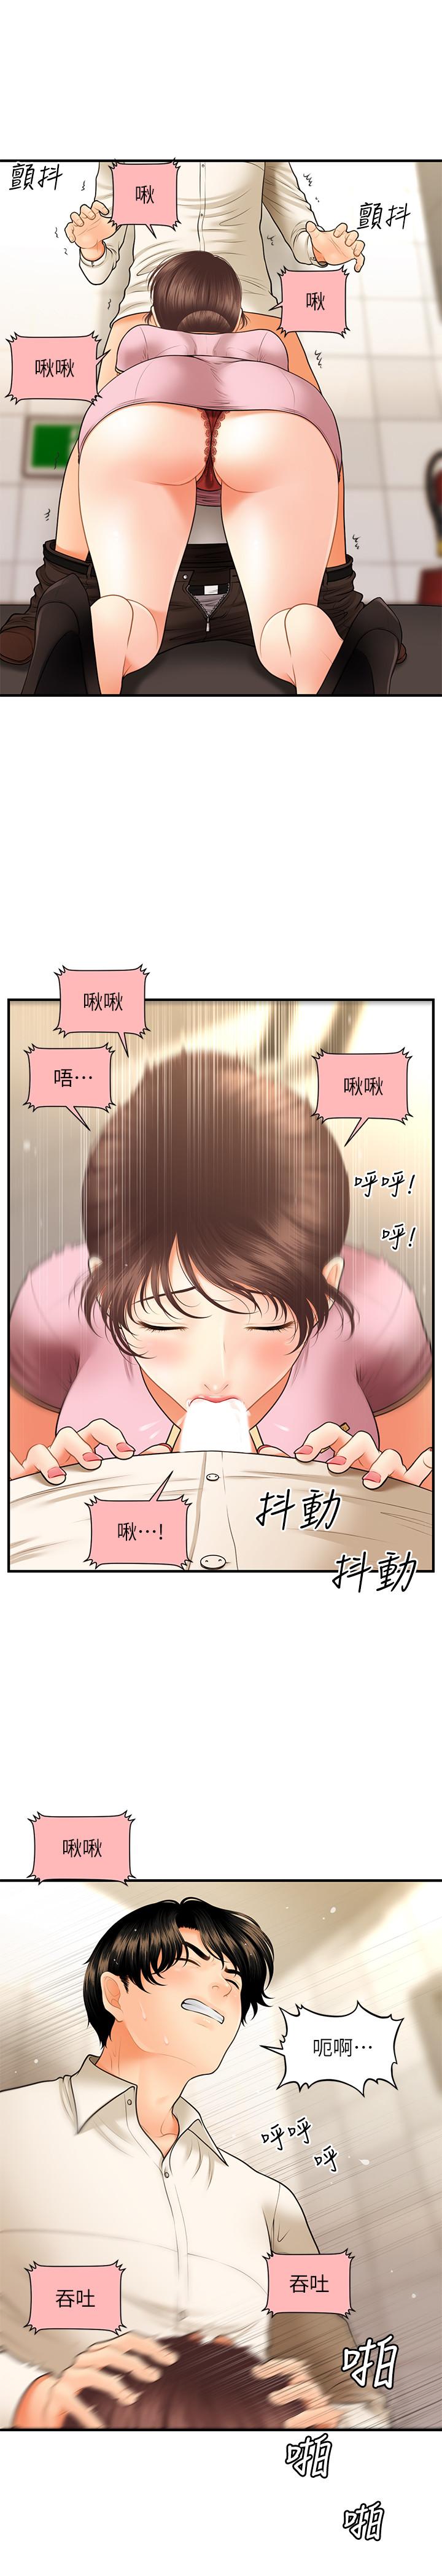 韩国污漫画 醫美奇雞 第26话-为院长献上的肉体安慰 31